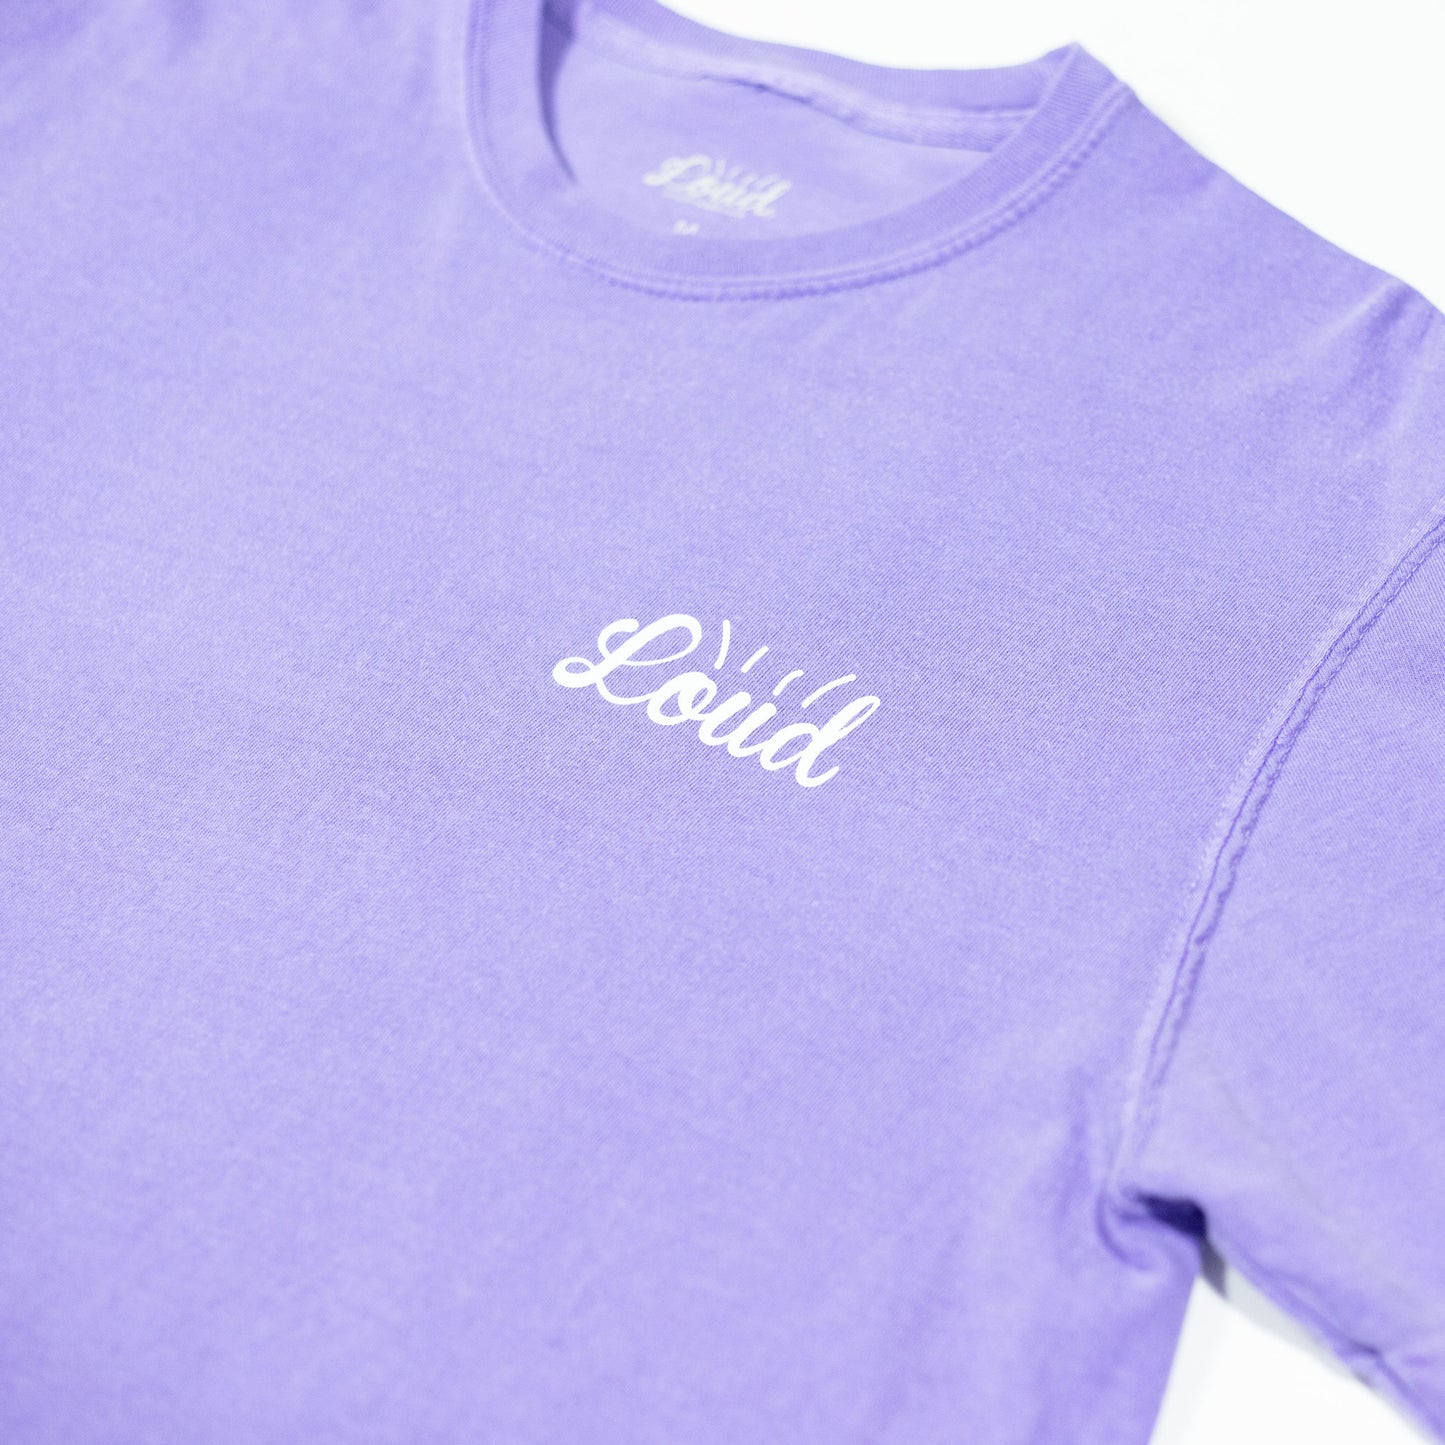 Loud Mini Logo Tee - Vintage Violet